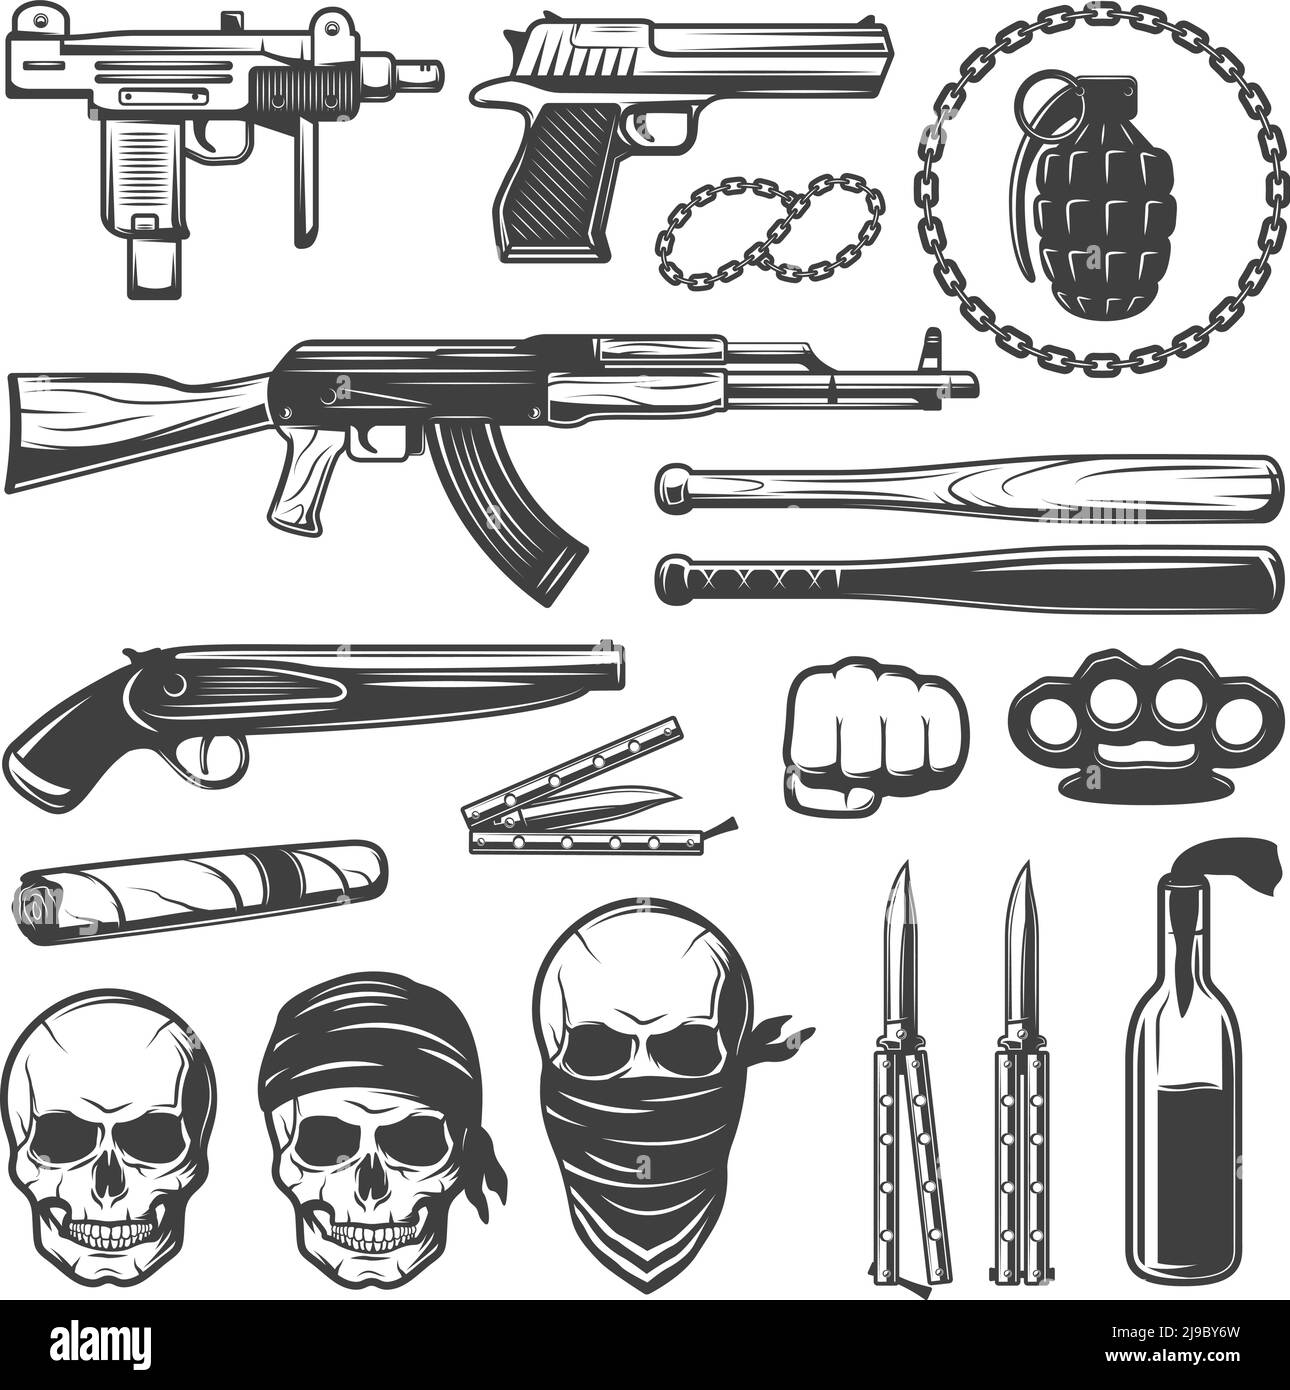 4 x Gun Tattoo  4 Guns Tattoo  Gangster Revolver Tattoo 4   Amazoncouk Beauty